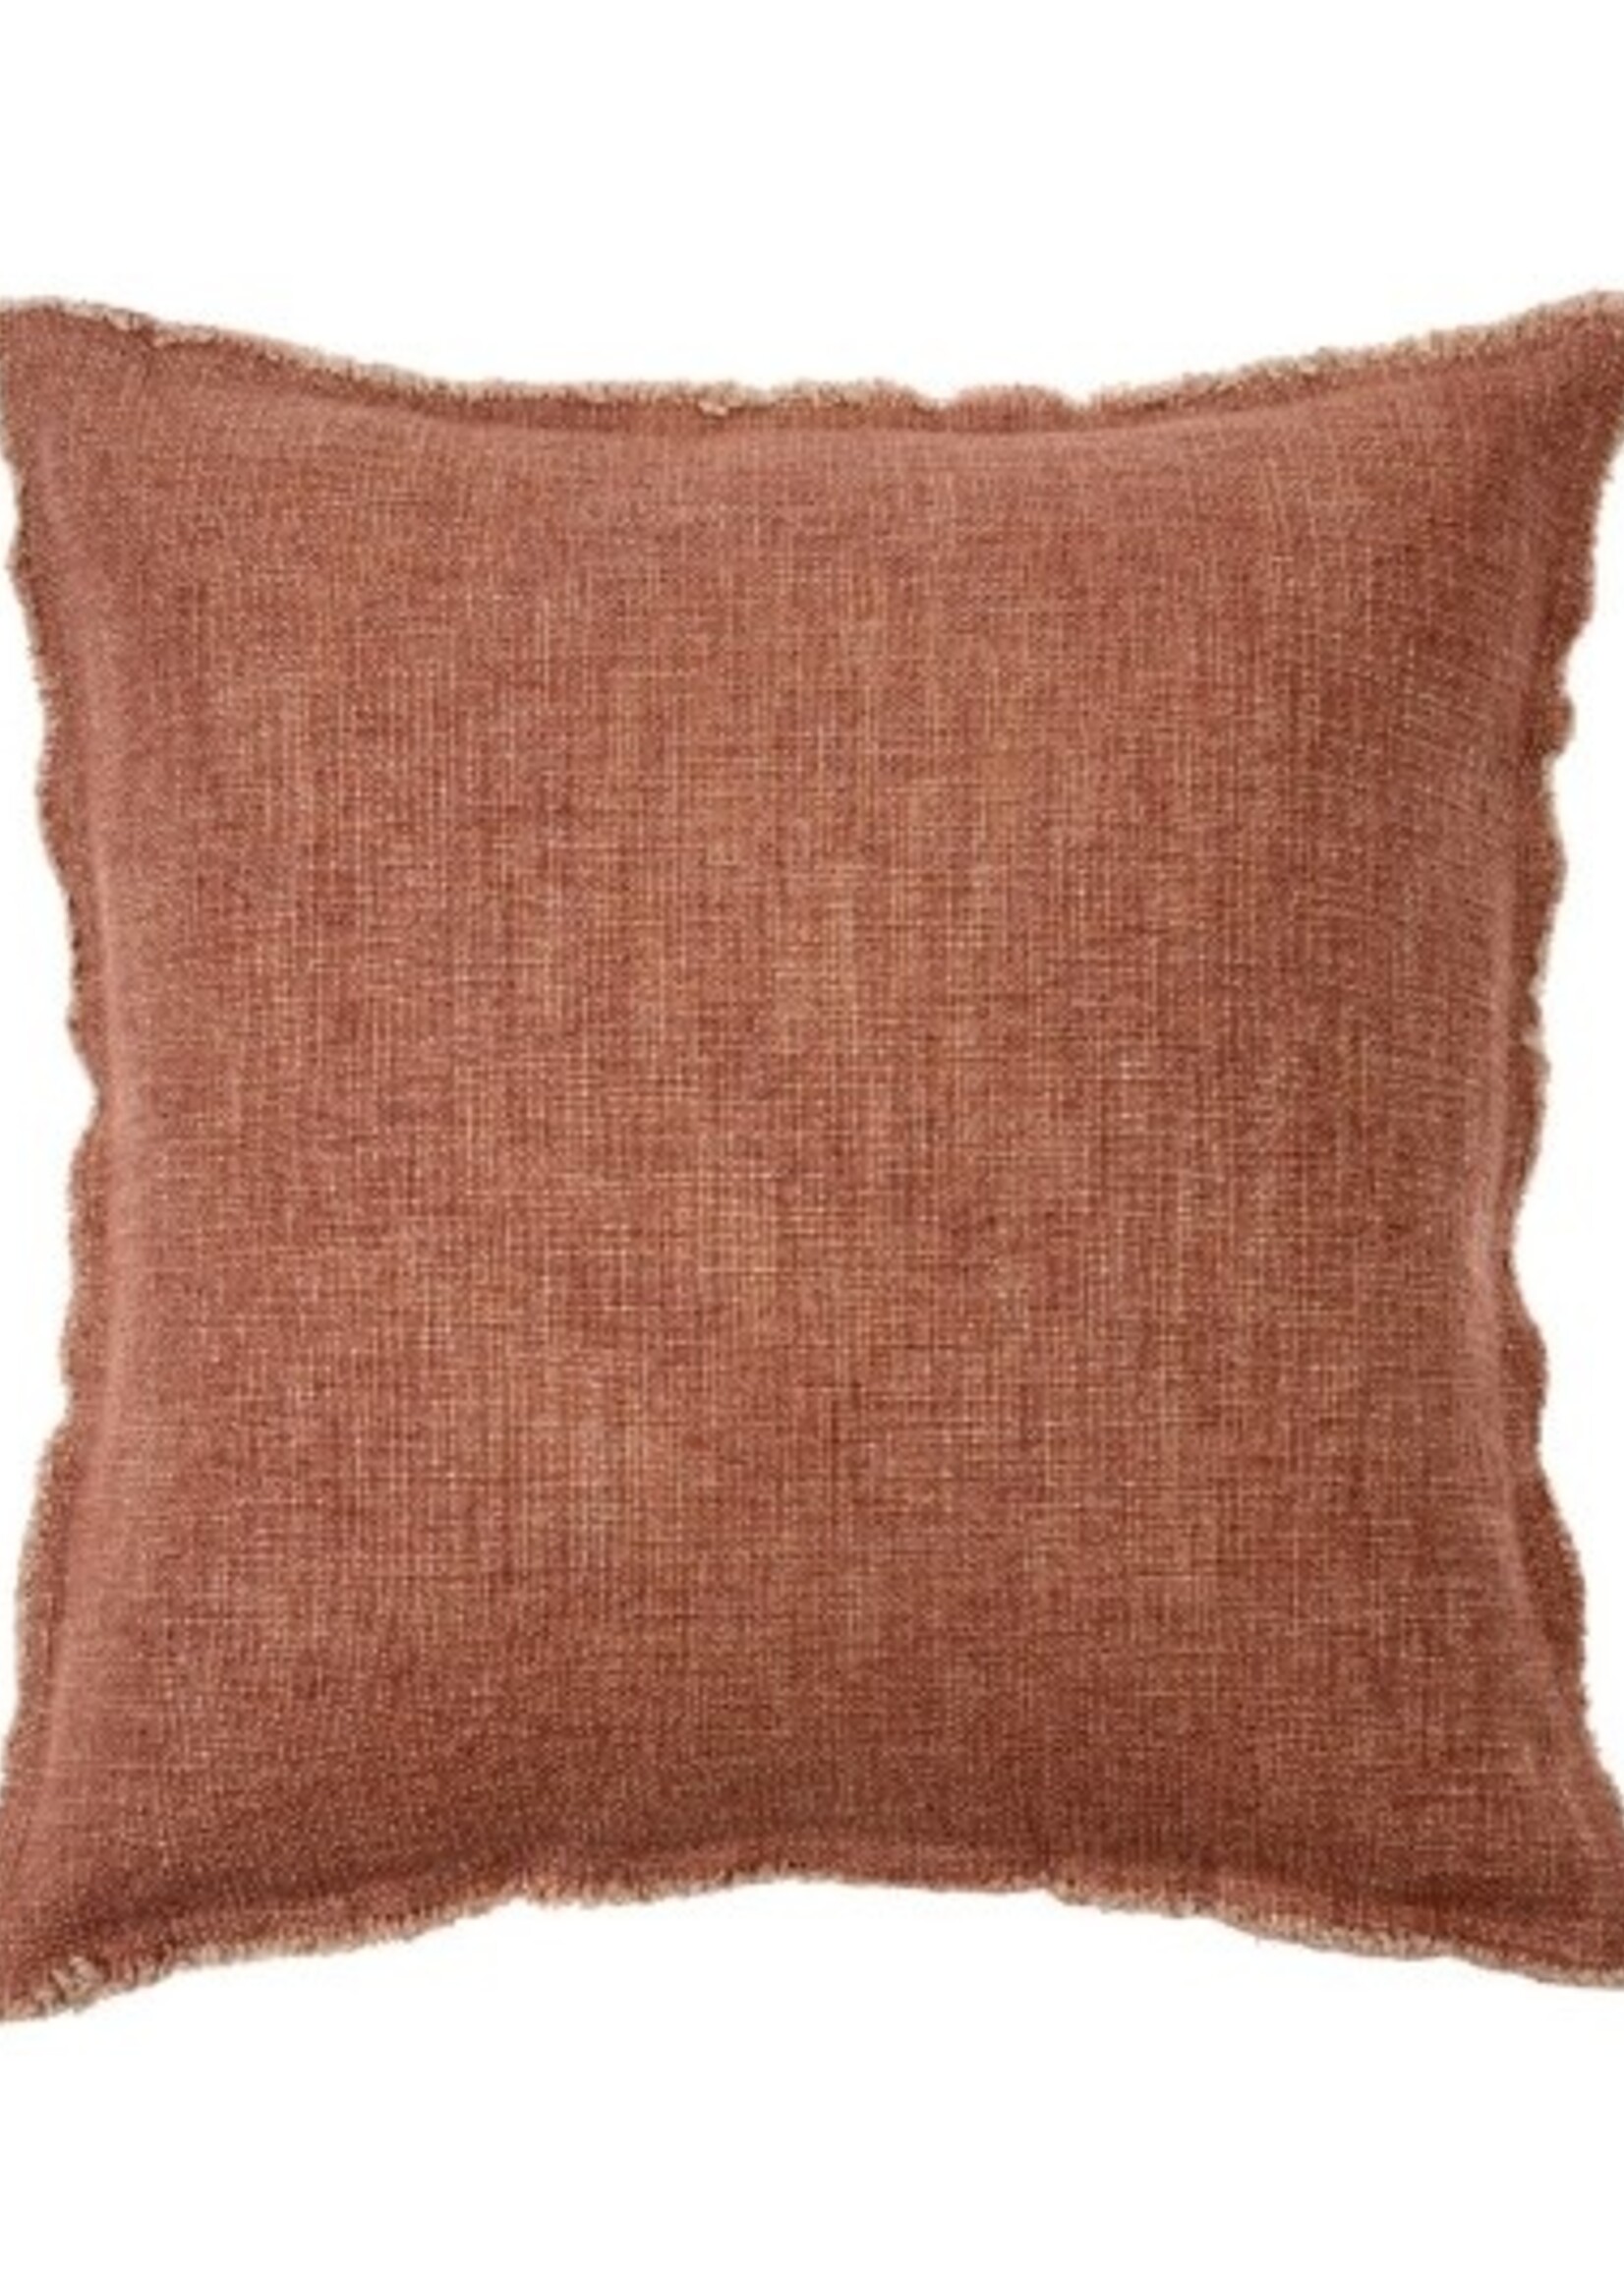 Indaba Selena Toss Pillow * 20"x20" * Brick